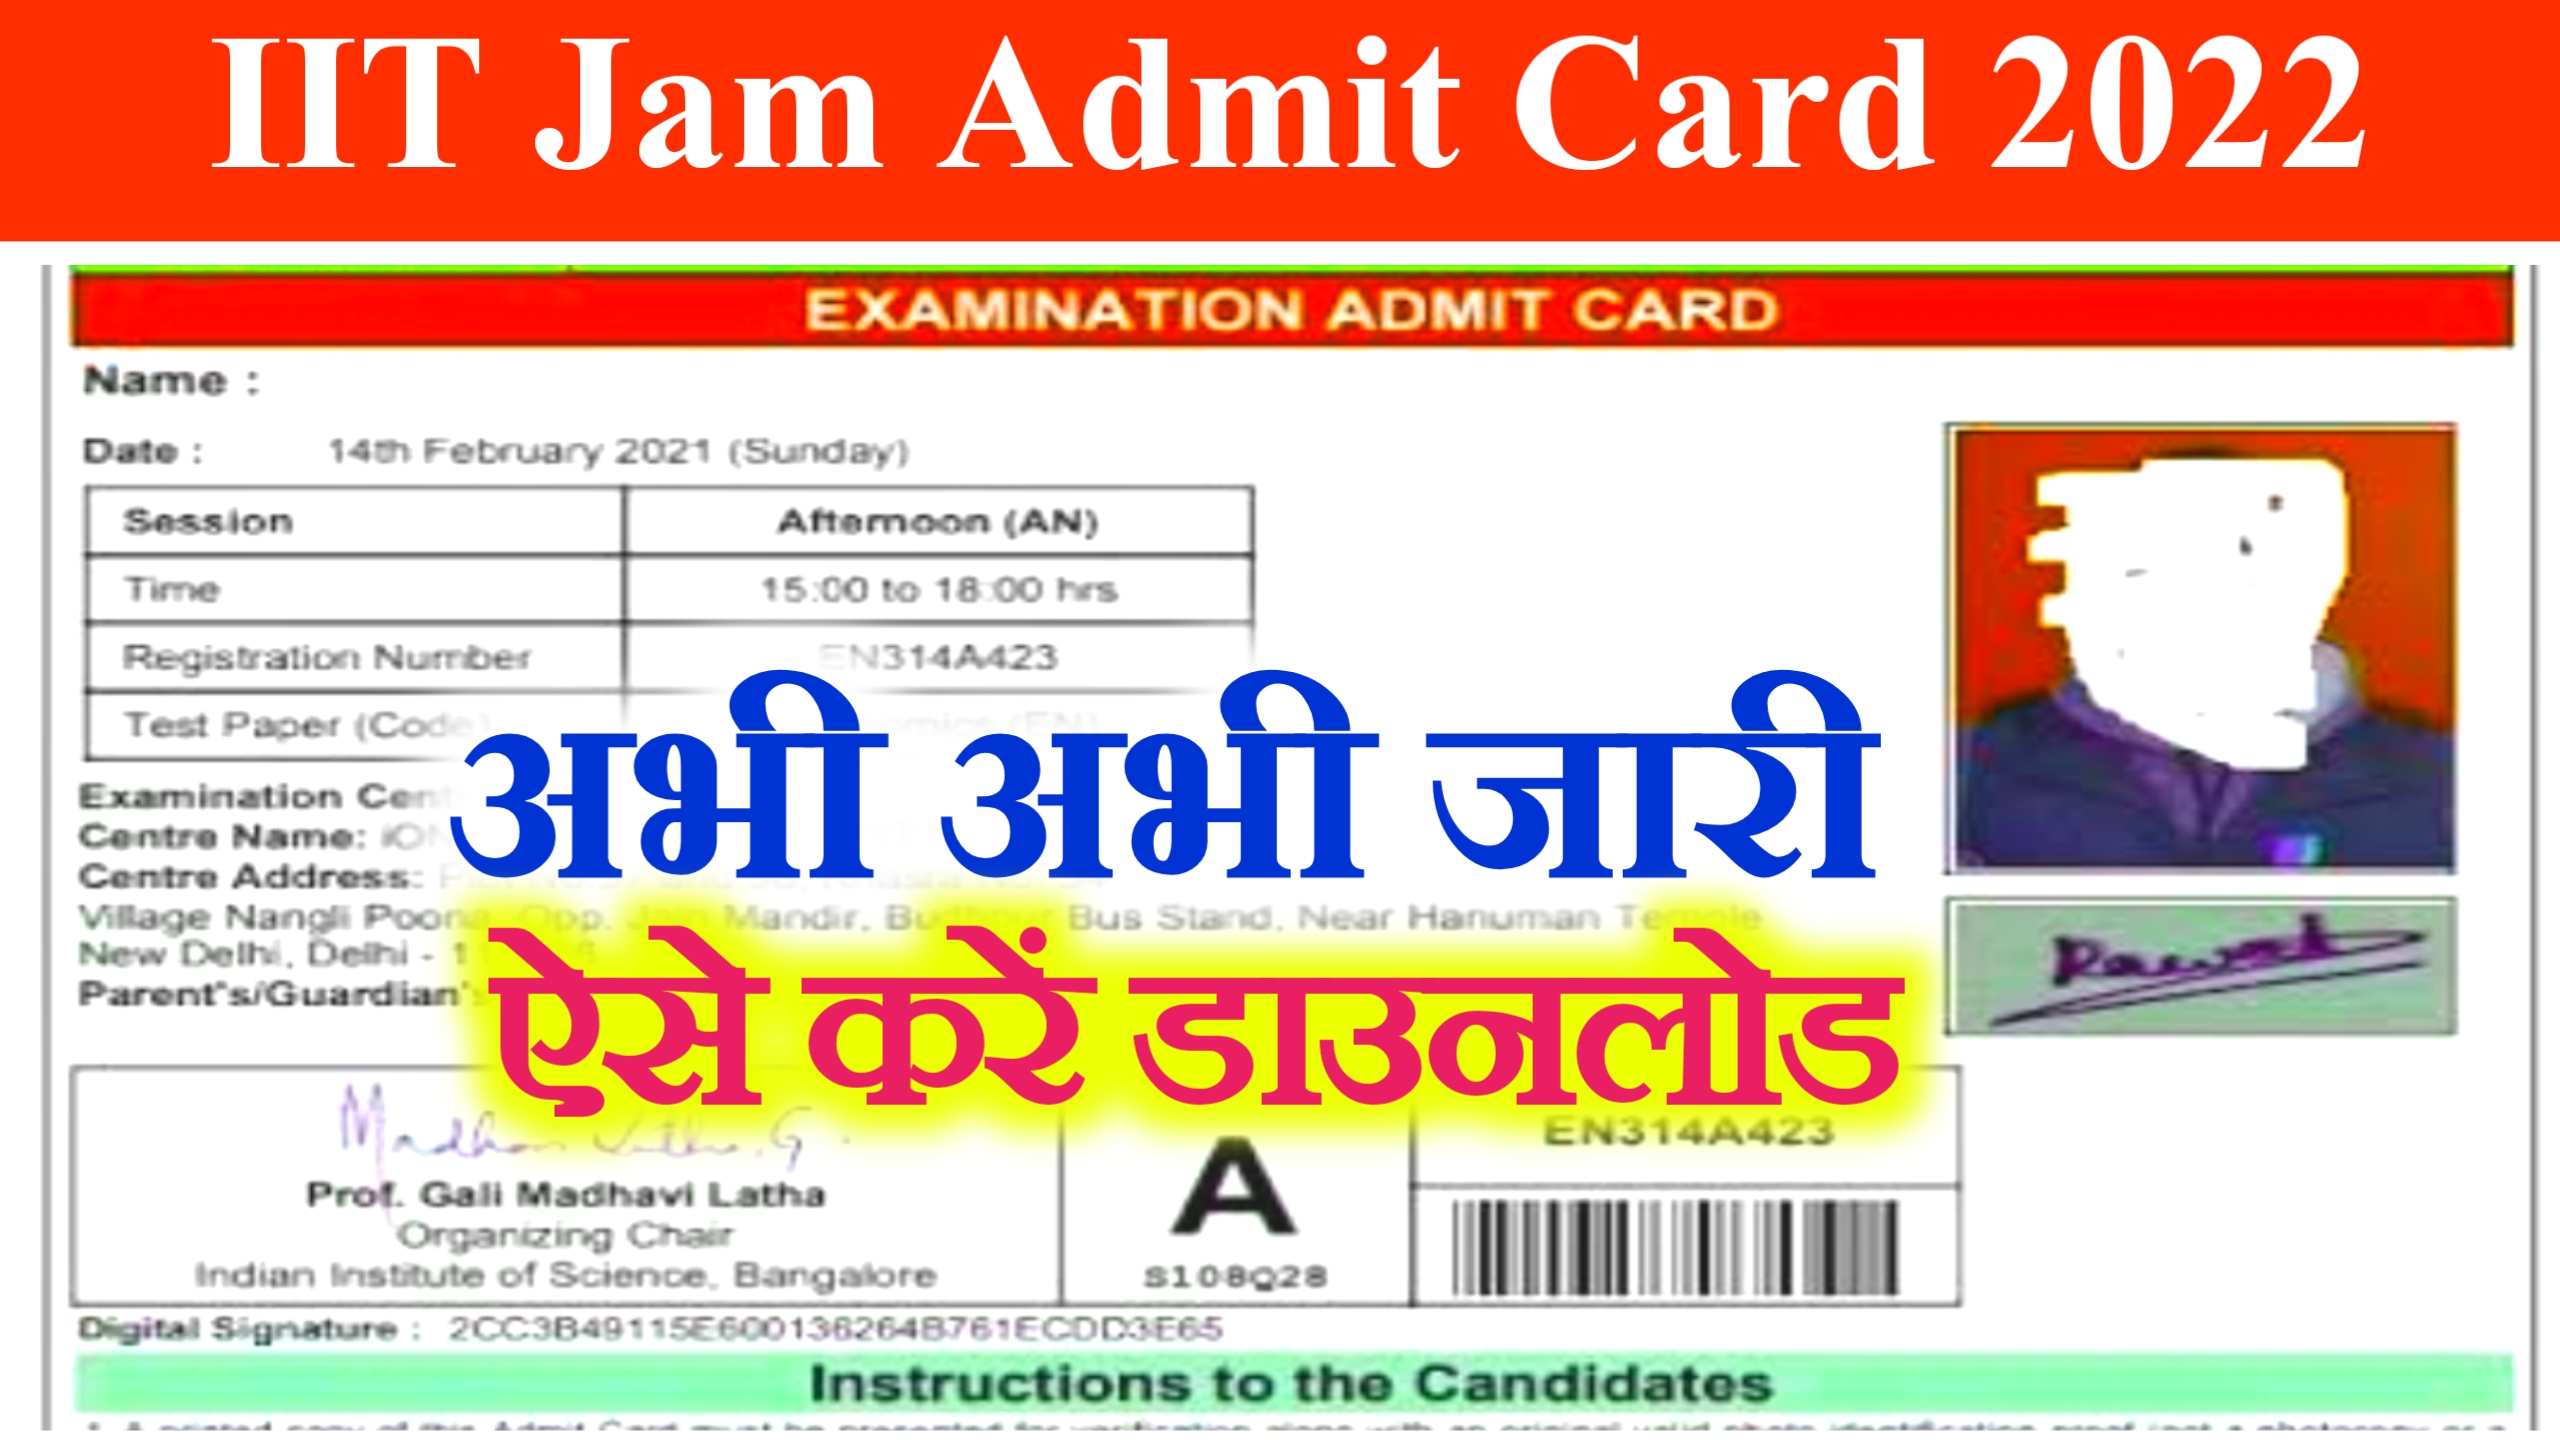 Iit Jam Admit Card 2022 Relaesed : ज्वाइंट एडमिशन टेस्ट का एडमिट कार्ड जारी , ऐसे करें डाउनलोड